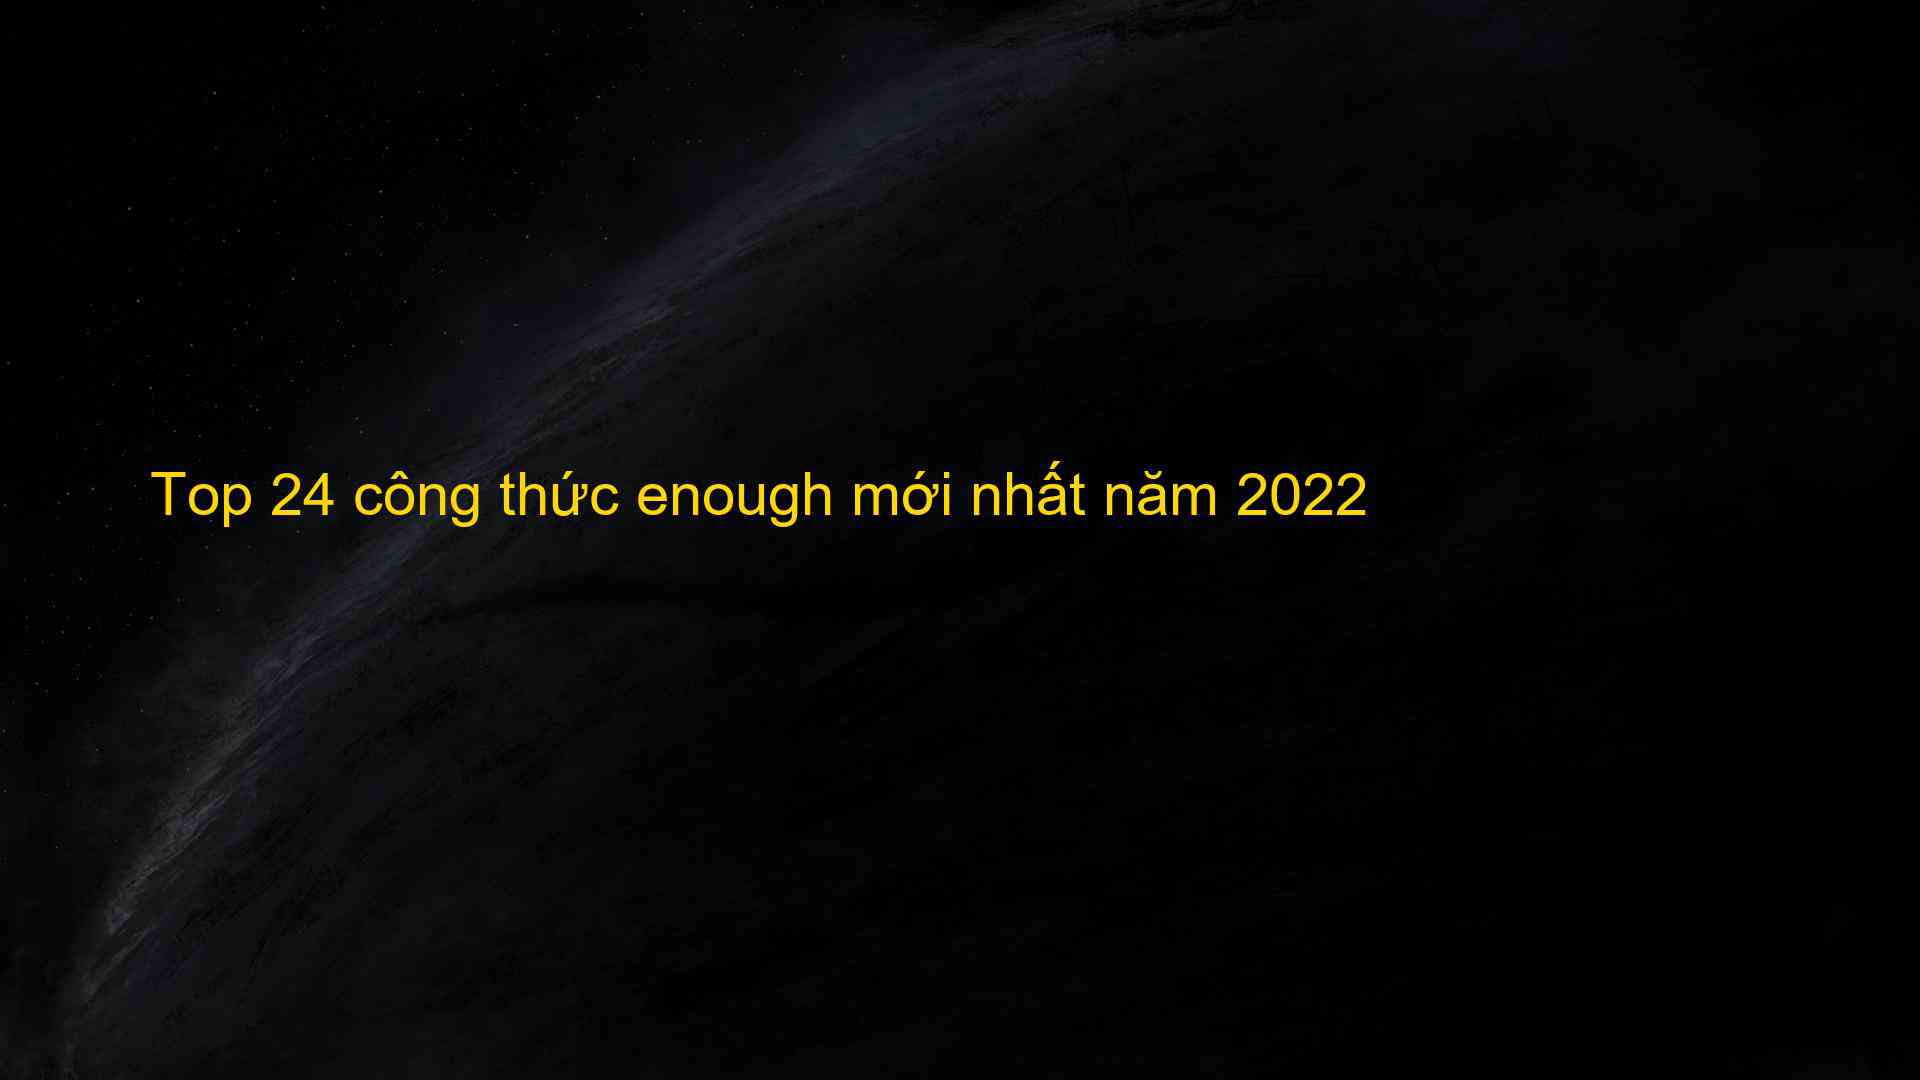 Top 24 cong thuc enough moi nhat nam 2022 1659756147